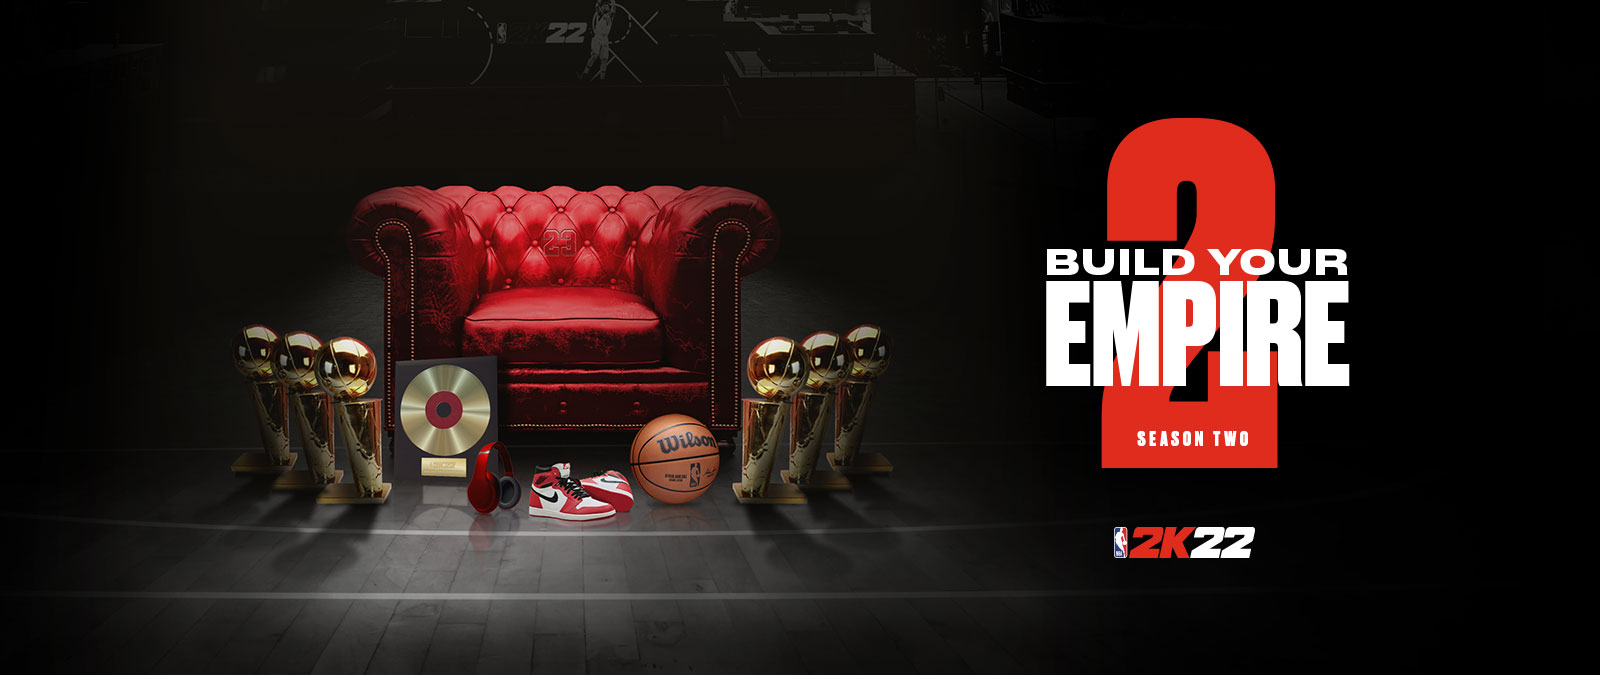 NBA 2k22'nin 2. sezonunda imparatorluğunuzu kurun: Kırmızı deri bir sandalyenin etrafına dizilmiş çok sayıda kupa.